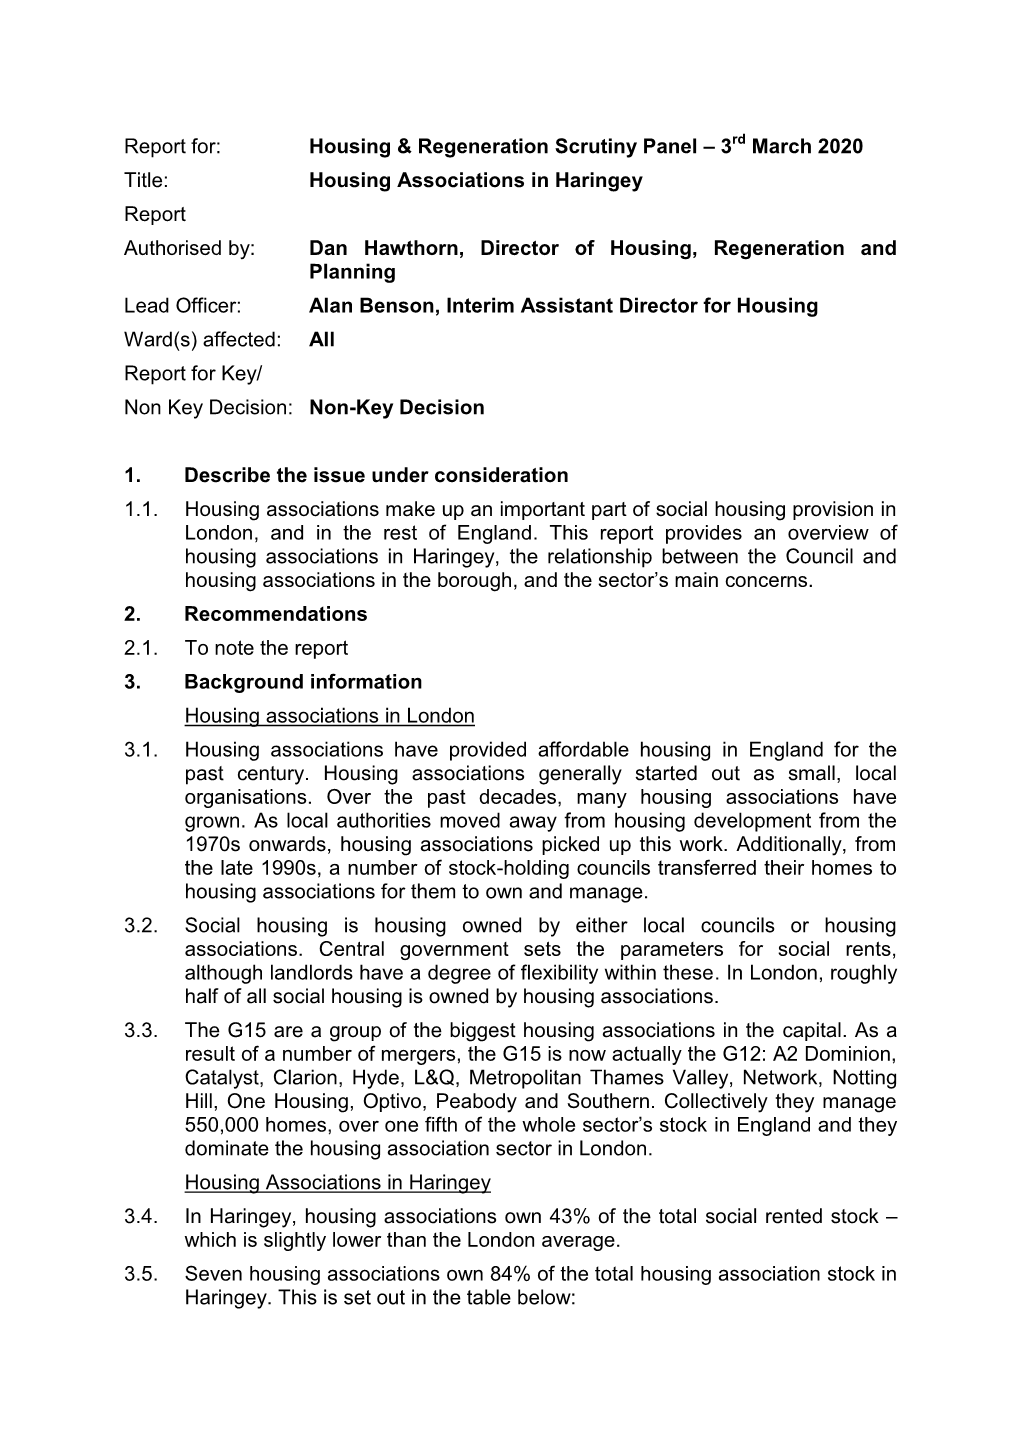 Housing Associations in Haringey Report Authoris